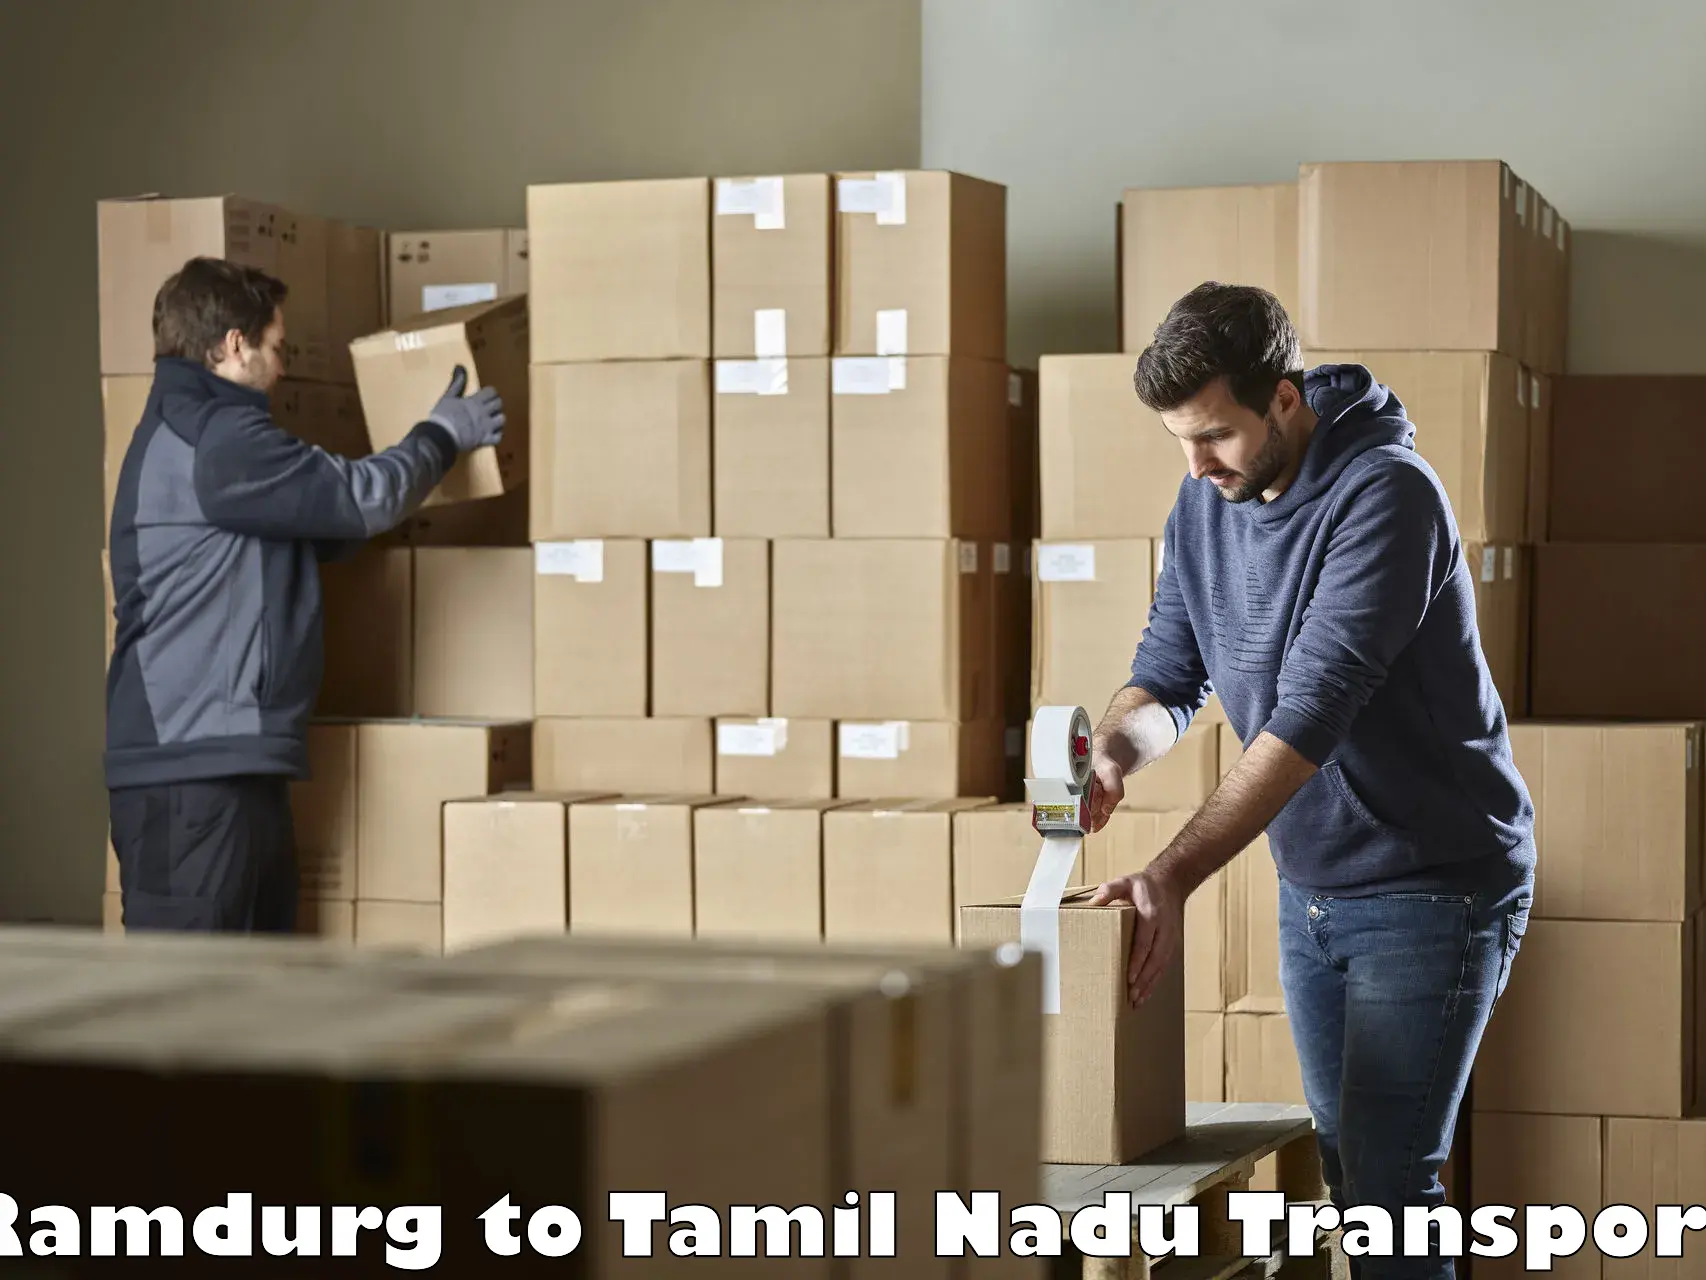 Daily parcel service transport Ramdurg to Orathanadu